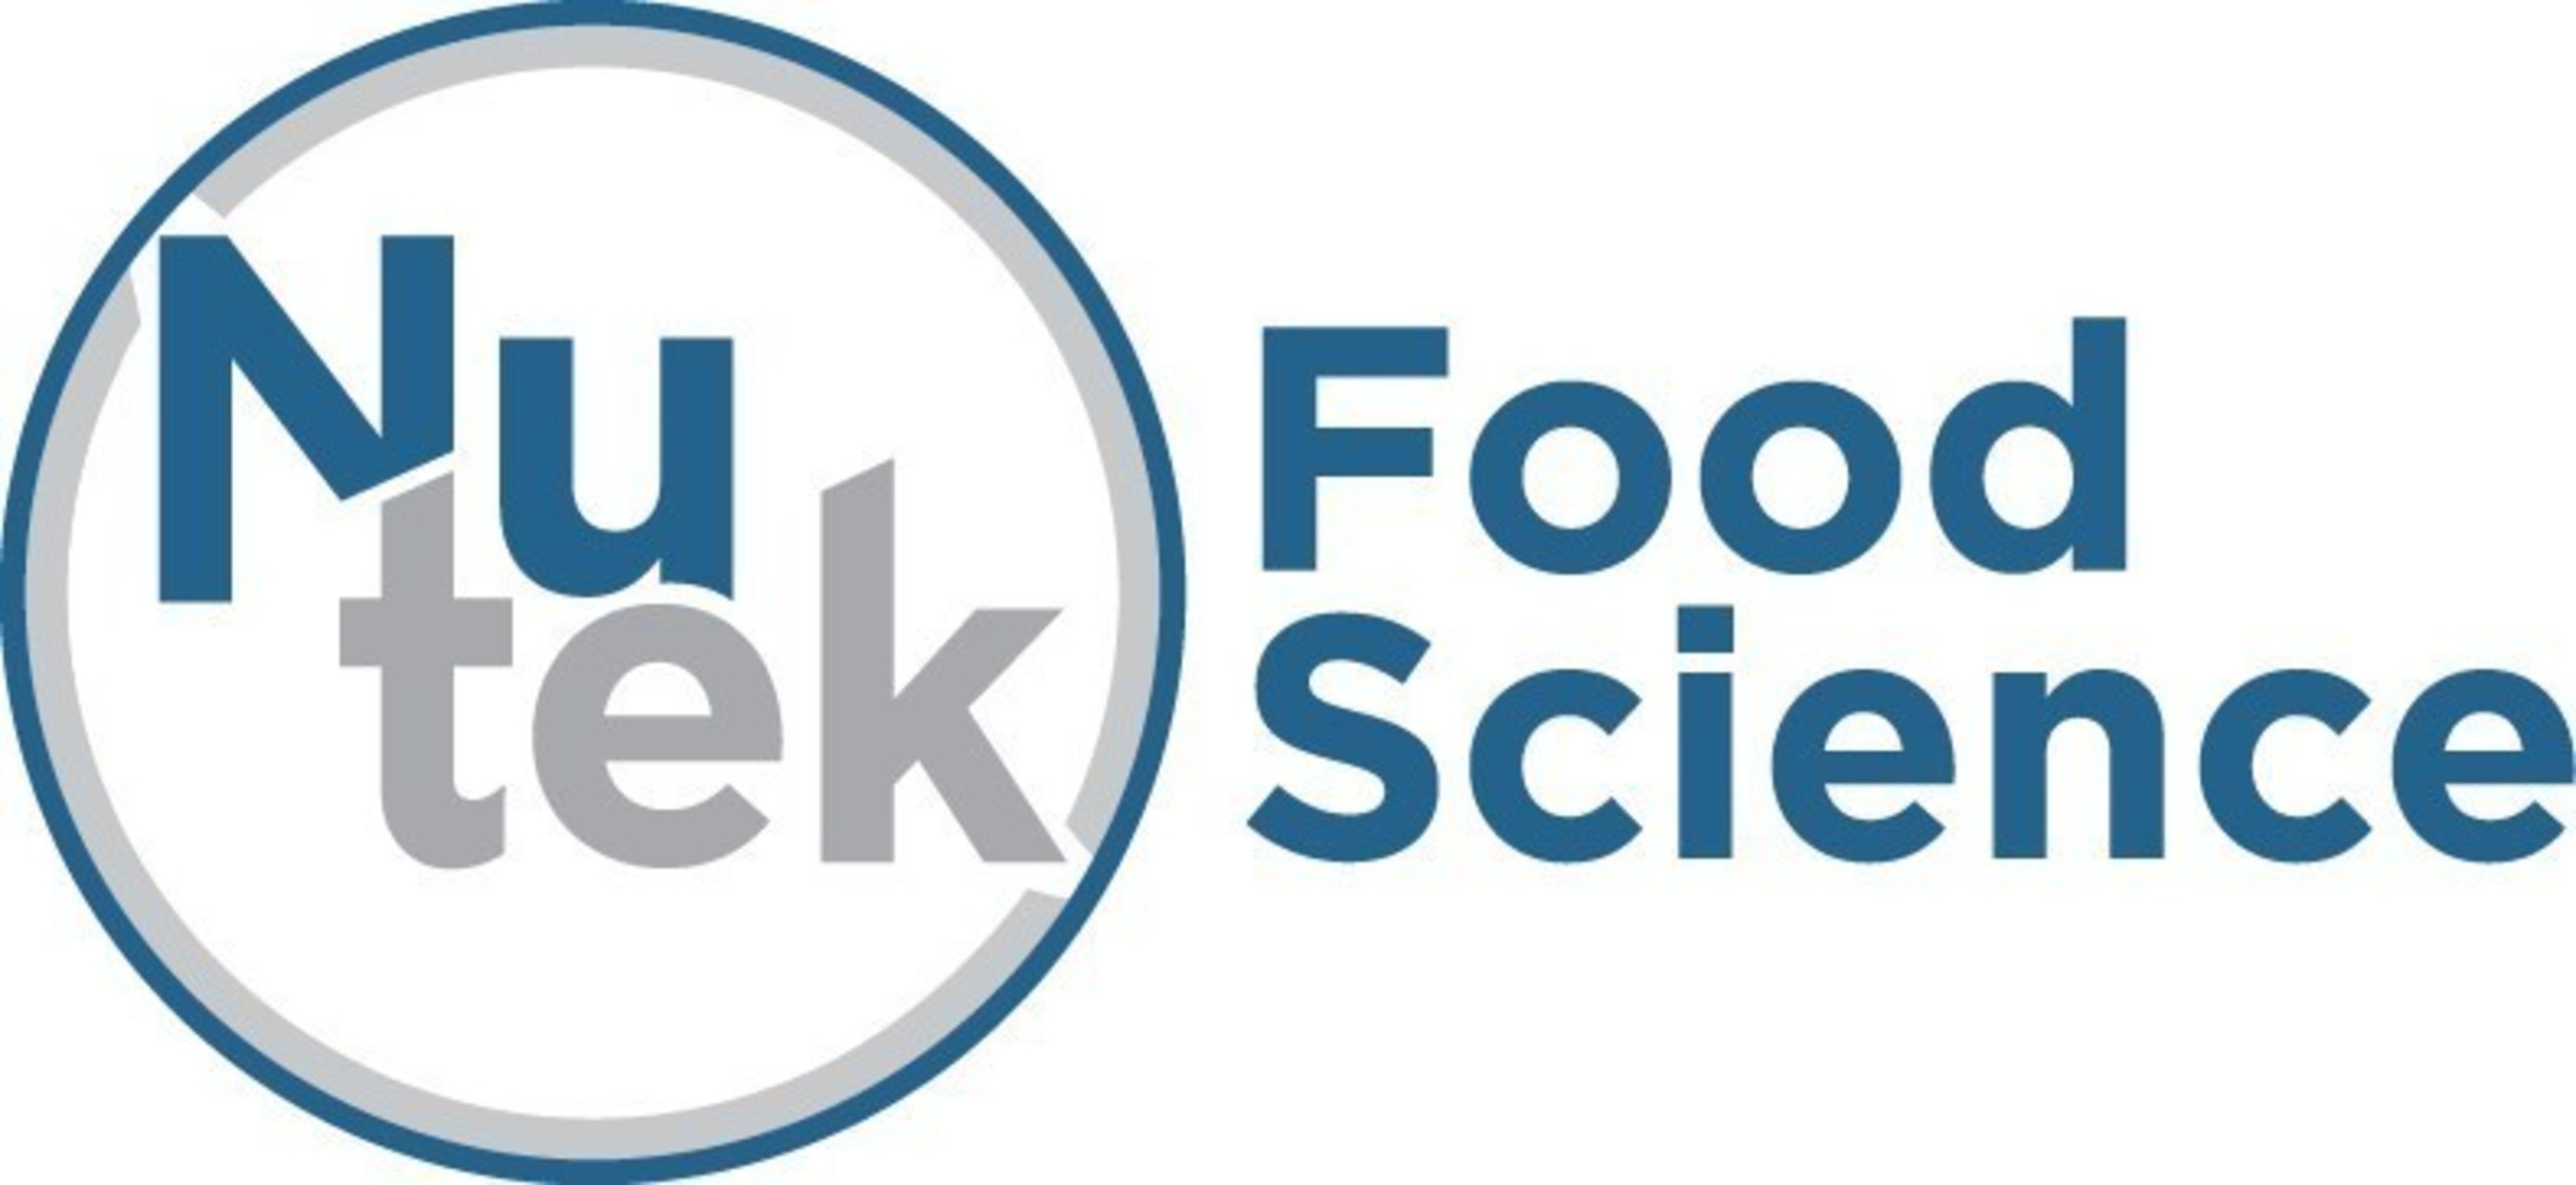 NuTek Food Science logo.